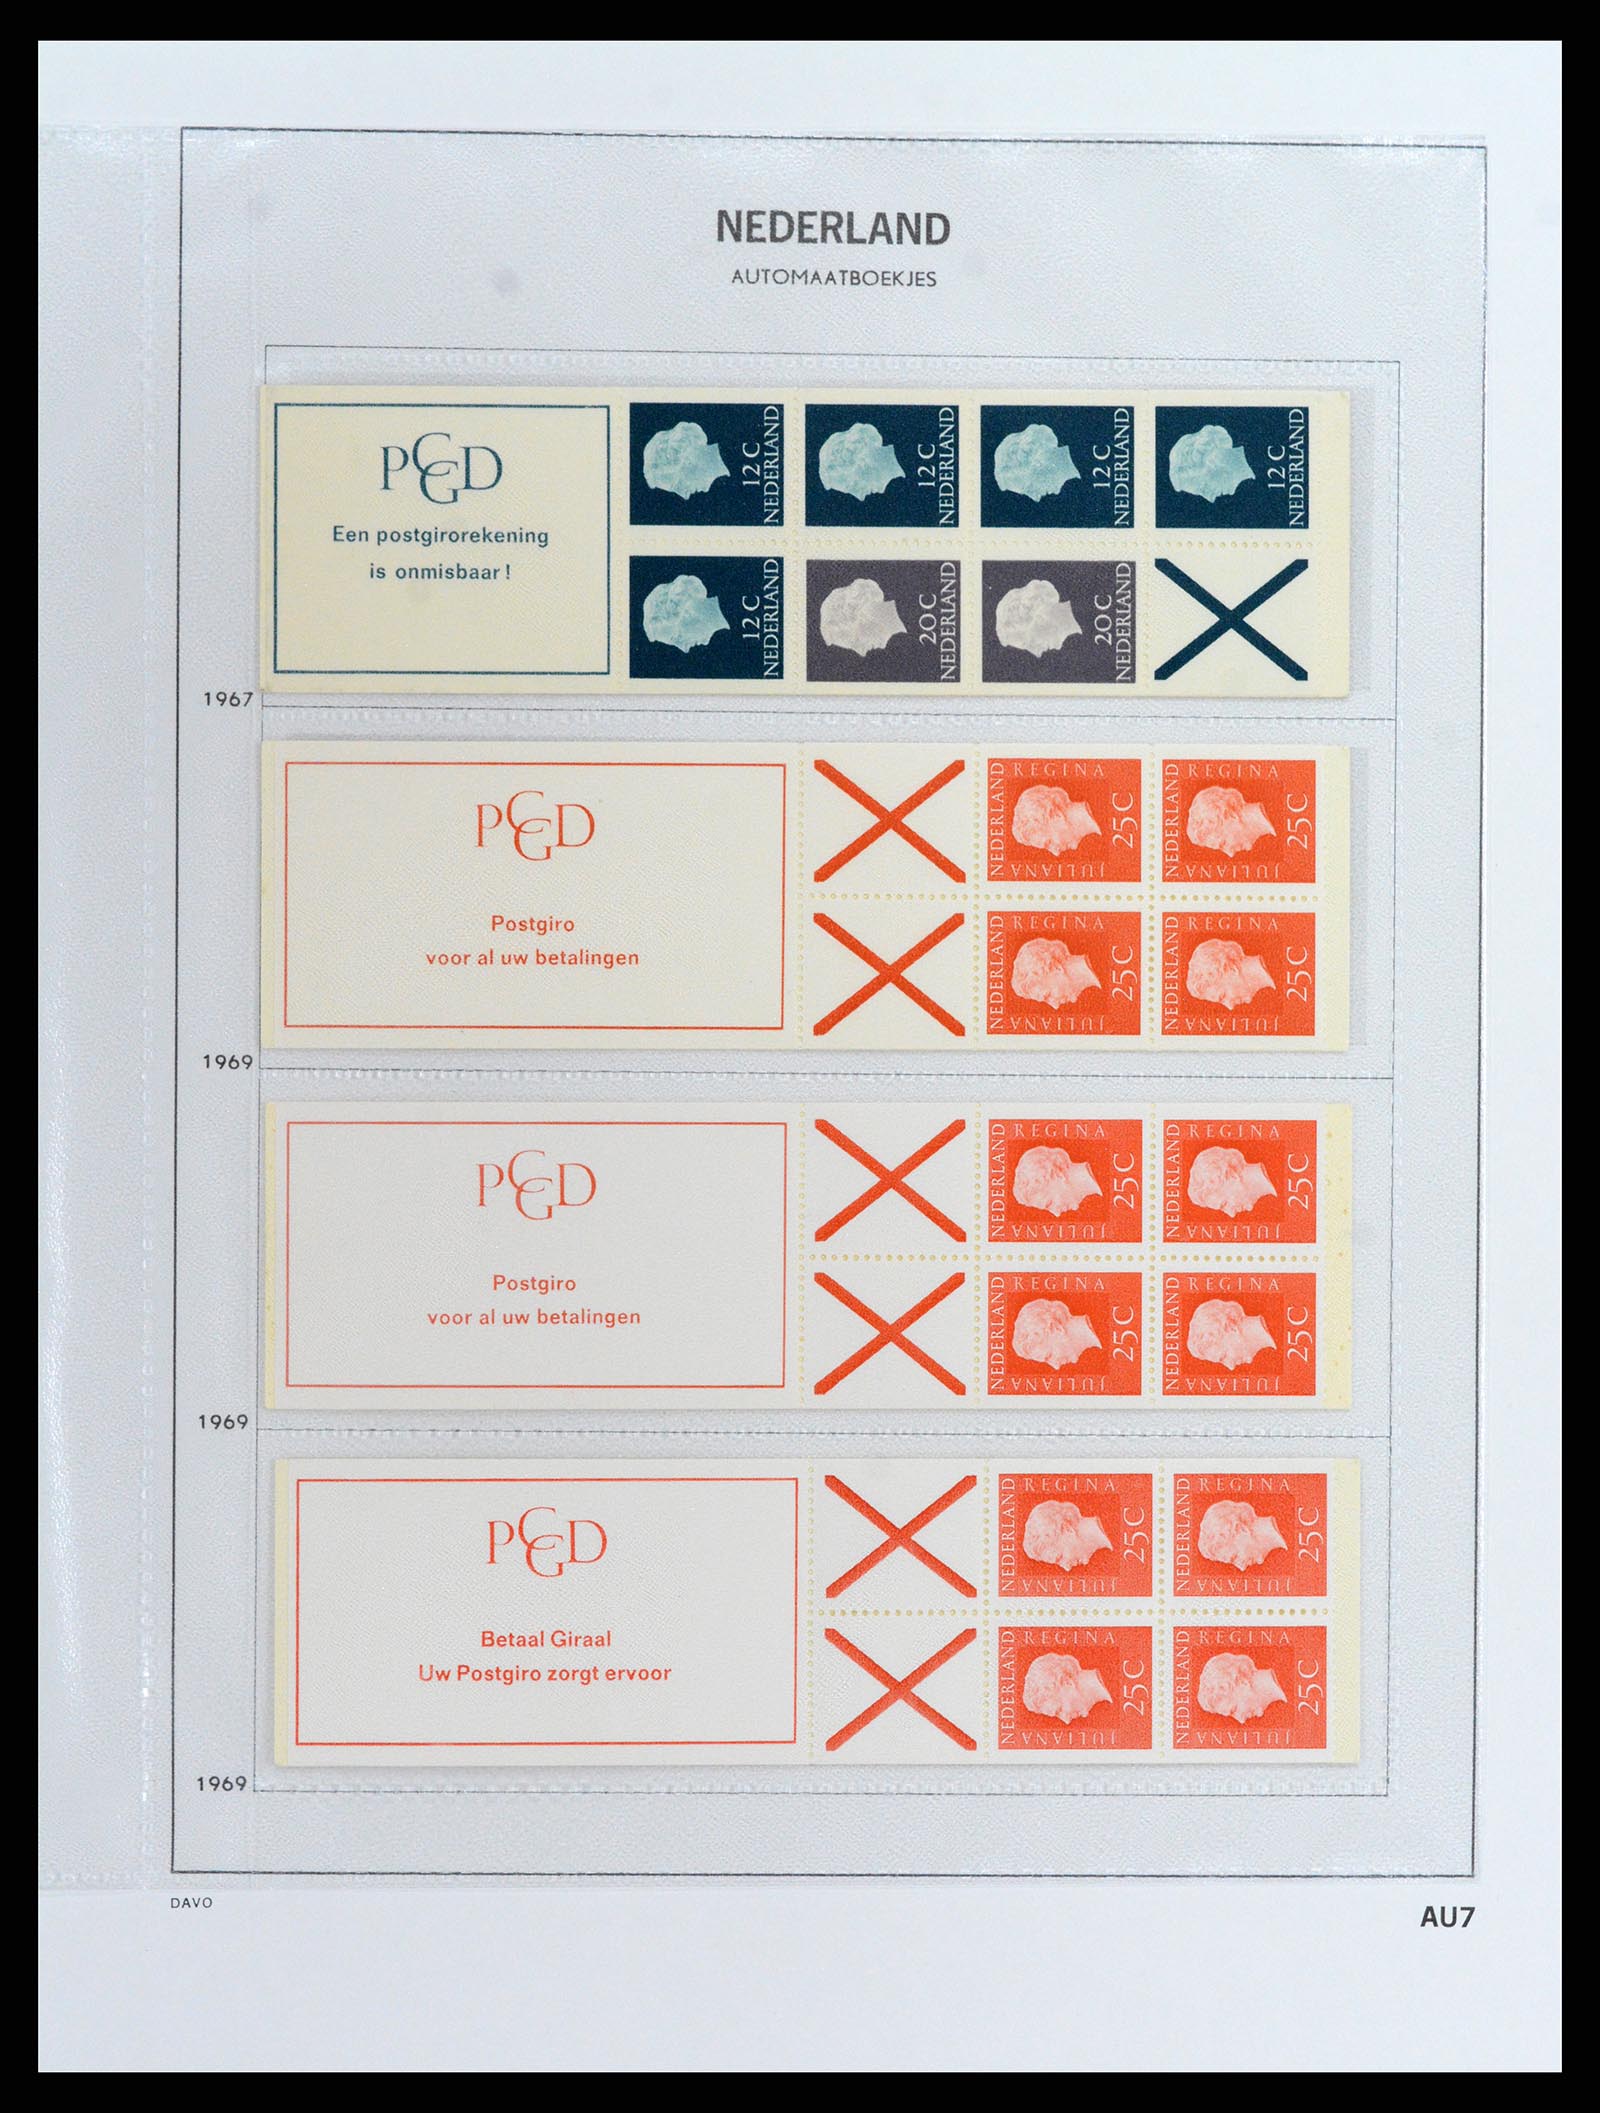 37871 007 - Stamp Collection 37871 Netherlands stampbooklets 1964-2000.